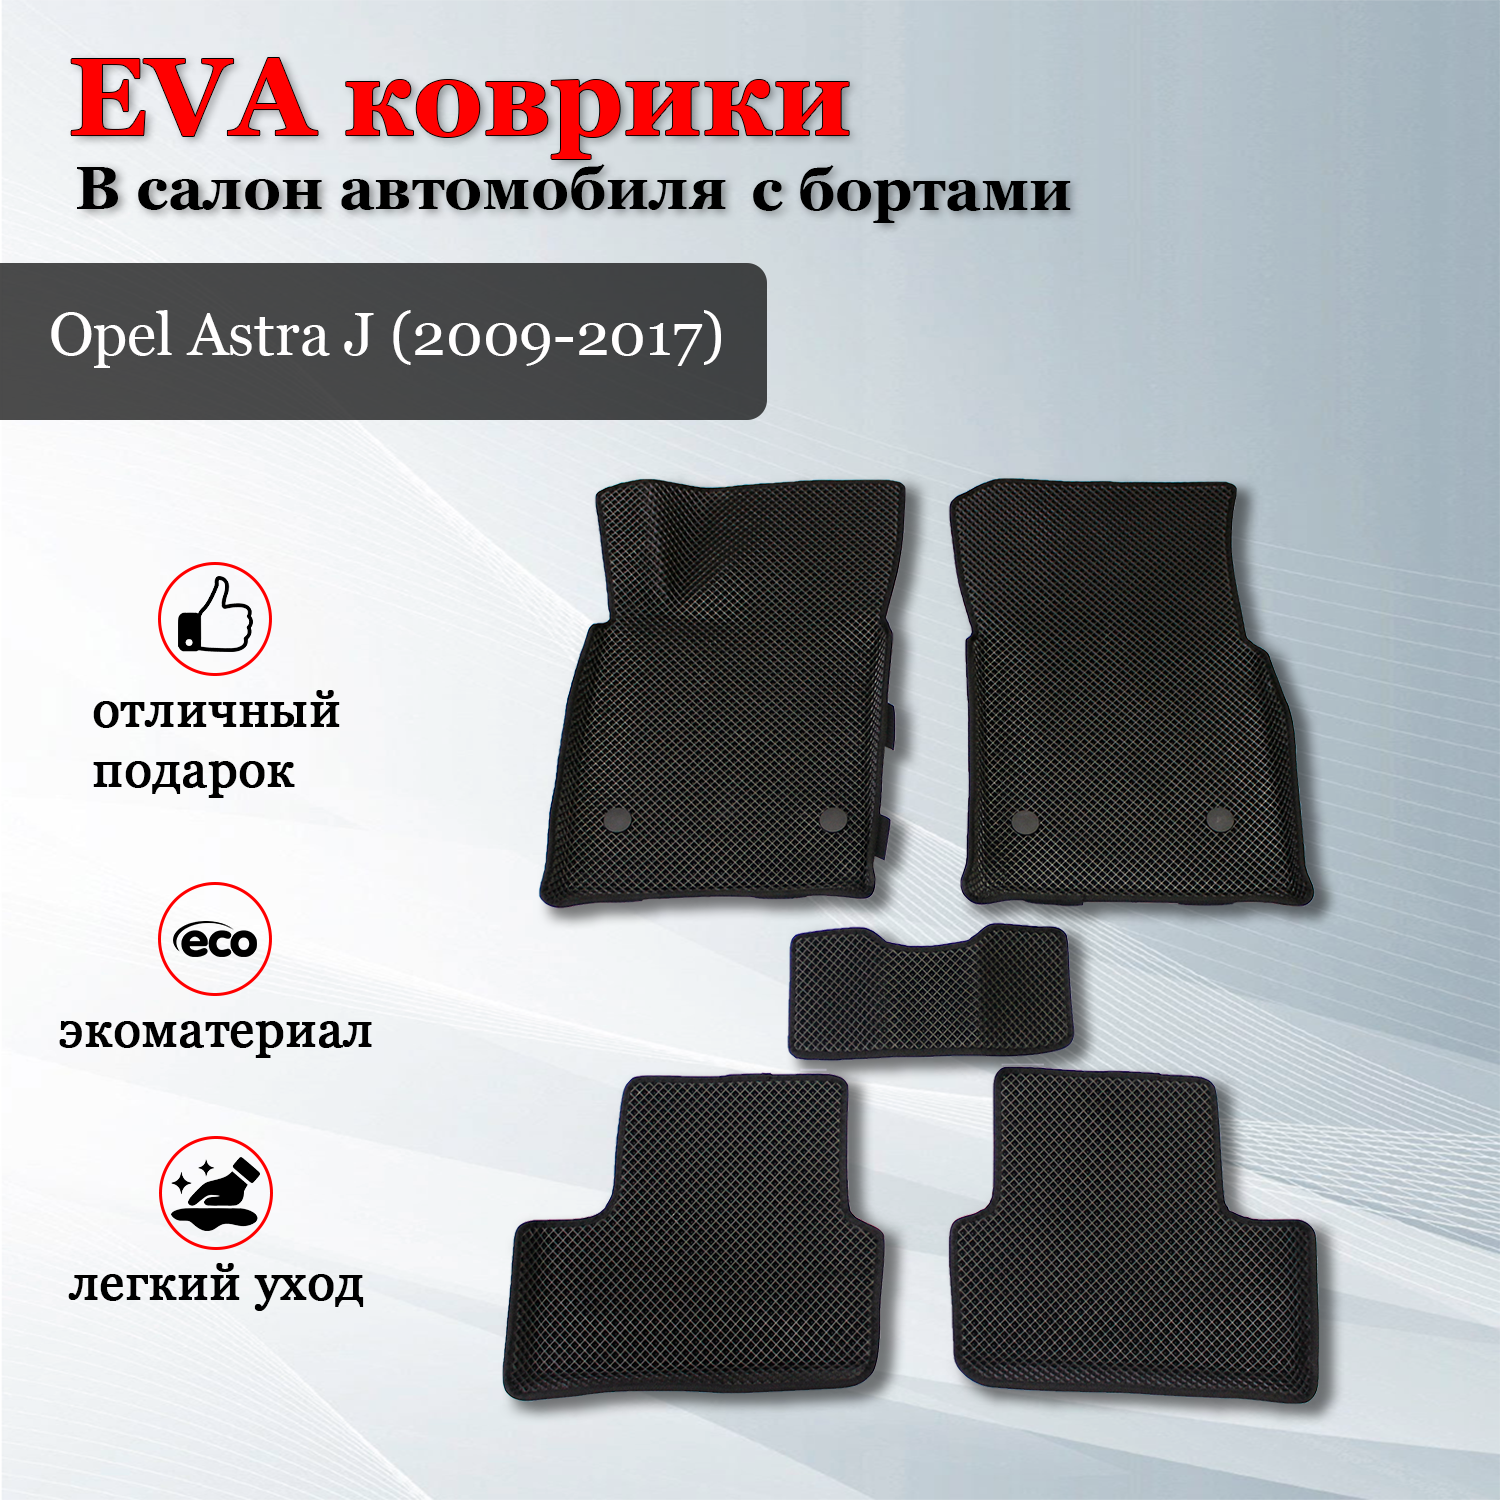 EVA коврики автомобильные с бортами в салон автомобиля коврики ЕВА для автомобиля с бортами для Опель Астра J / Opel Astra J (2009-2017)